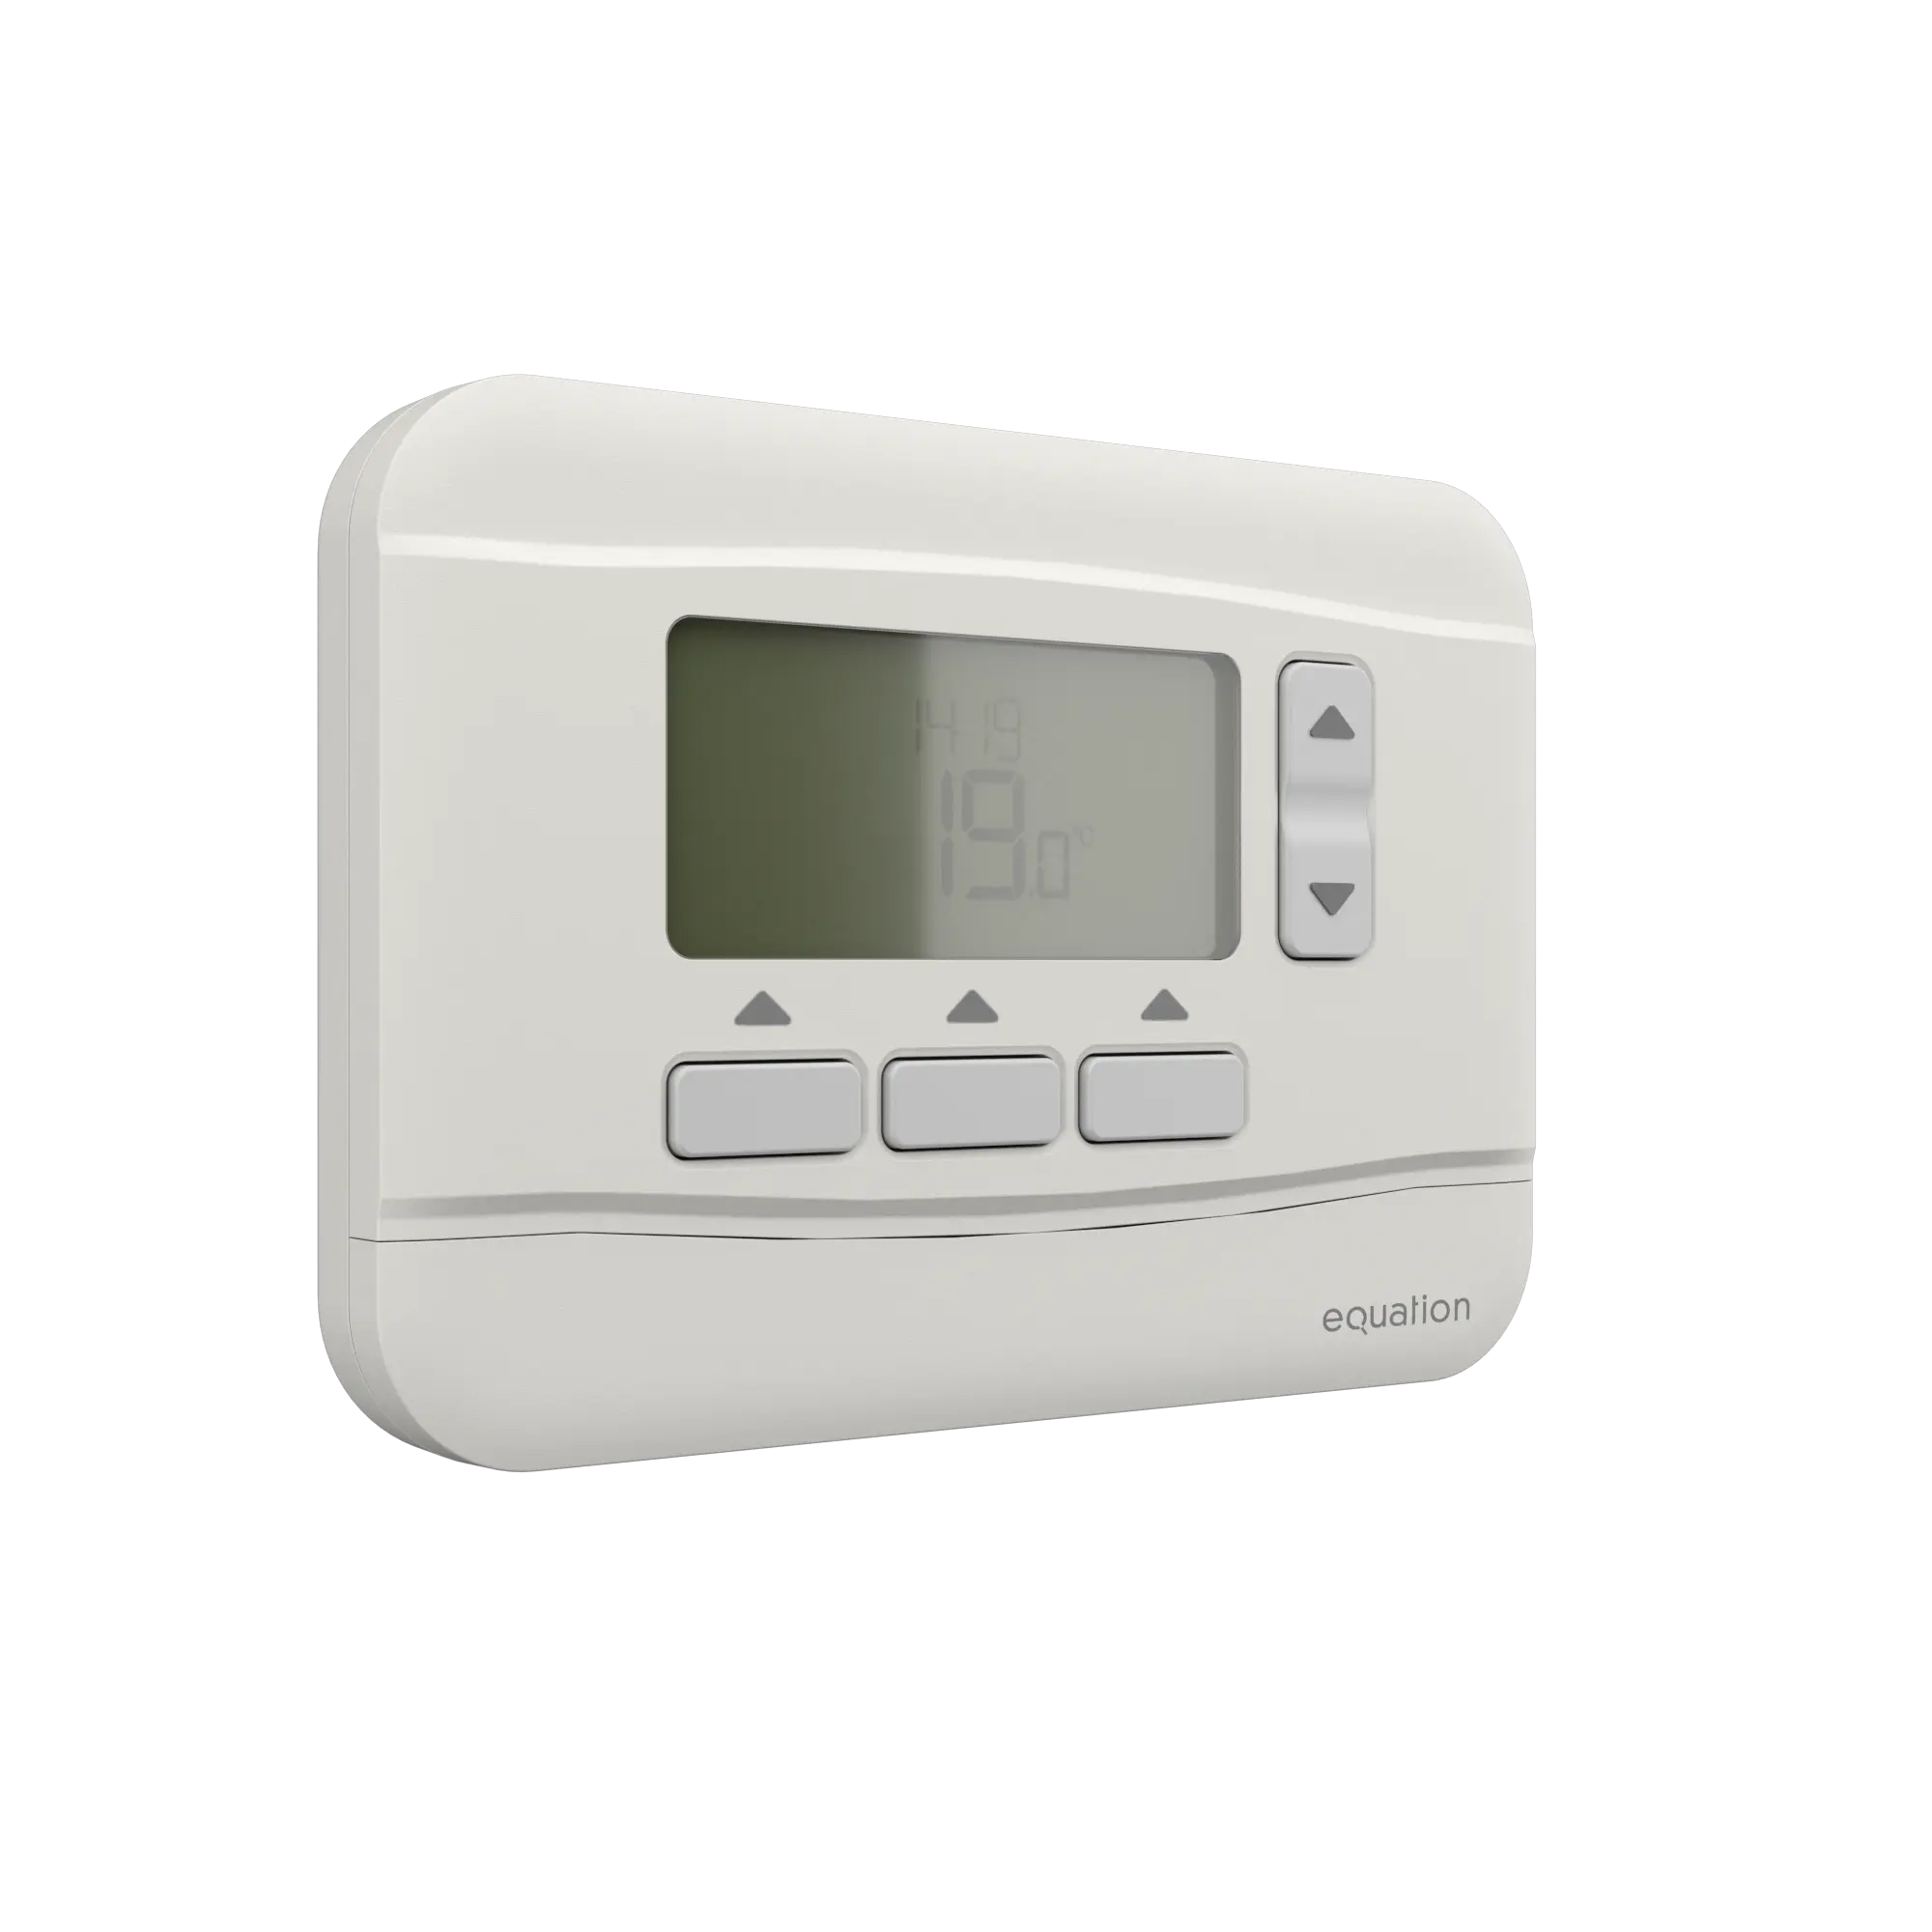 Comment installer un thermostat programmable pour votre chaudière